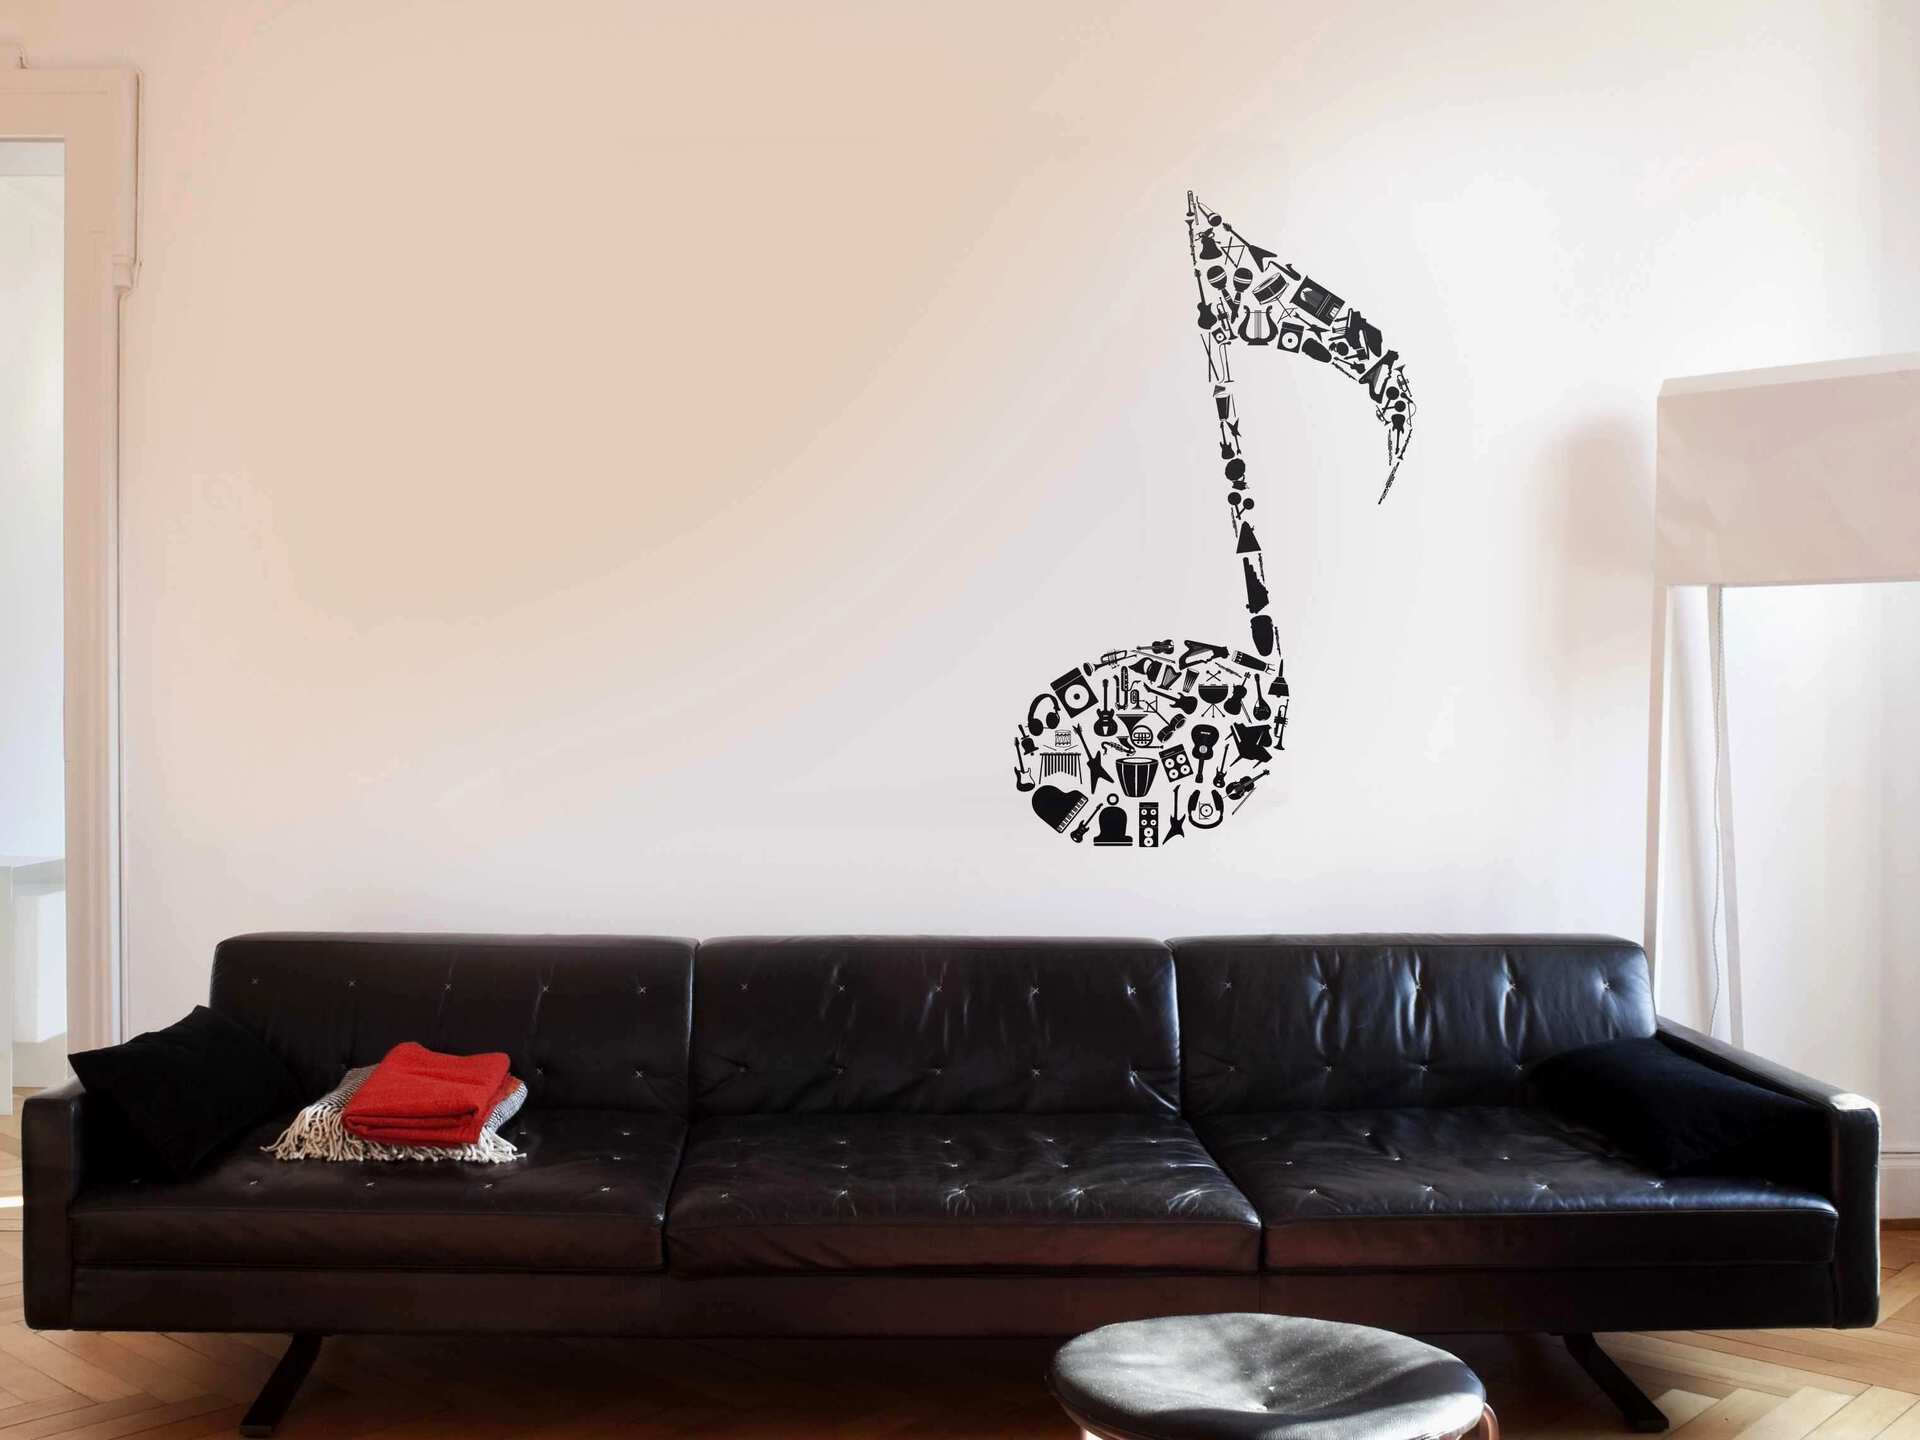 Como decorar paredes ¡Ideas fáciles para personalizar tus espacios!